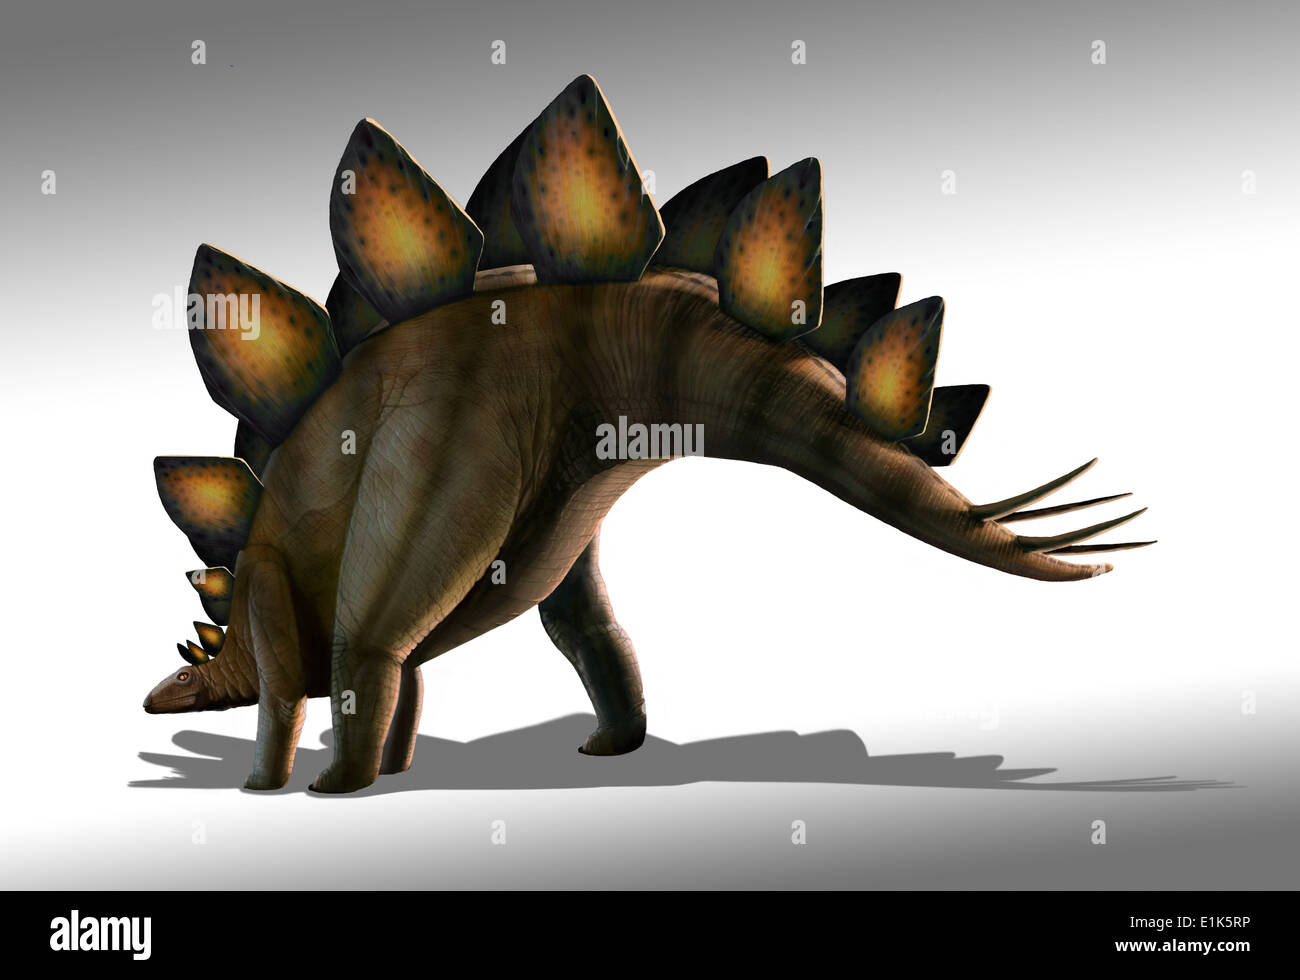 Dinosauro Stegosaurus computer artwork Stegosaurus era un dinosauro erbivori era a circa 9 metri di lunghezza e di 2,75 metri di altezza Foto Stock